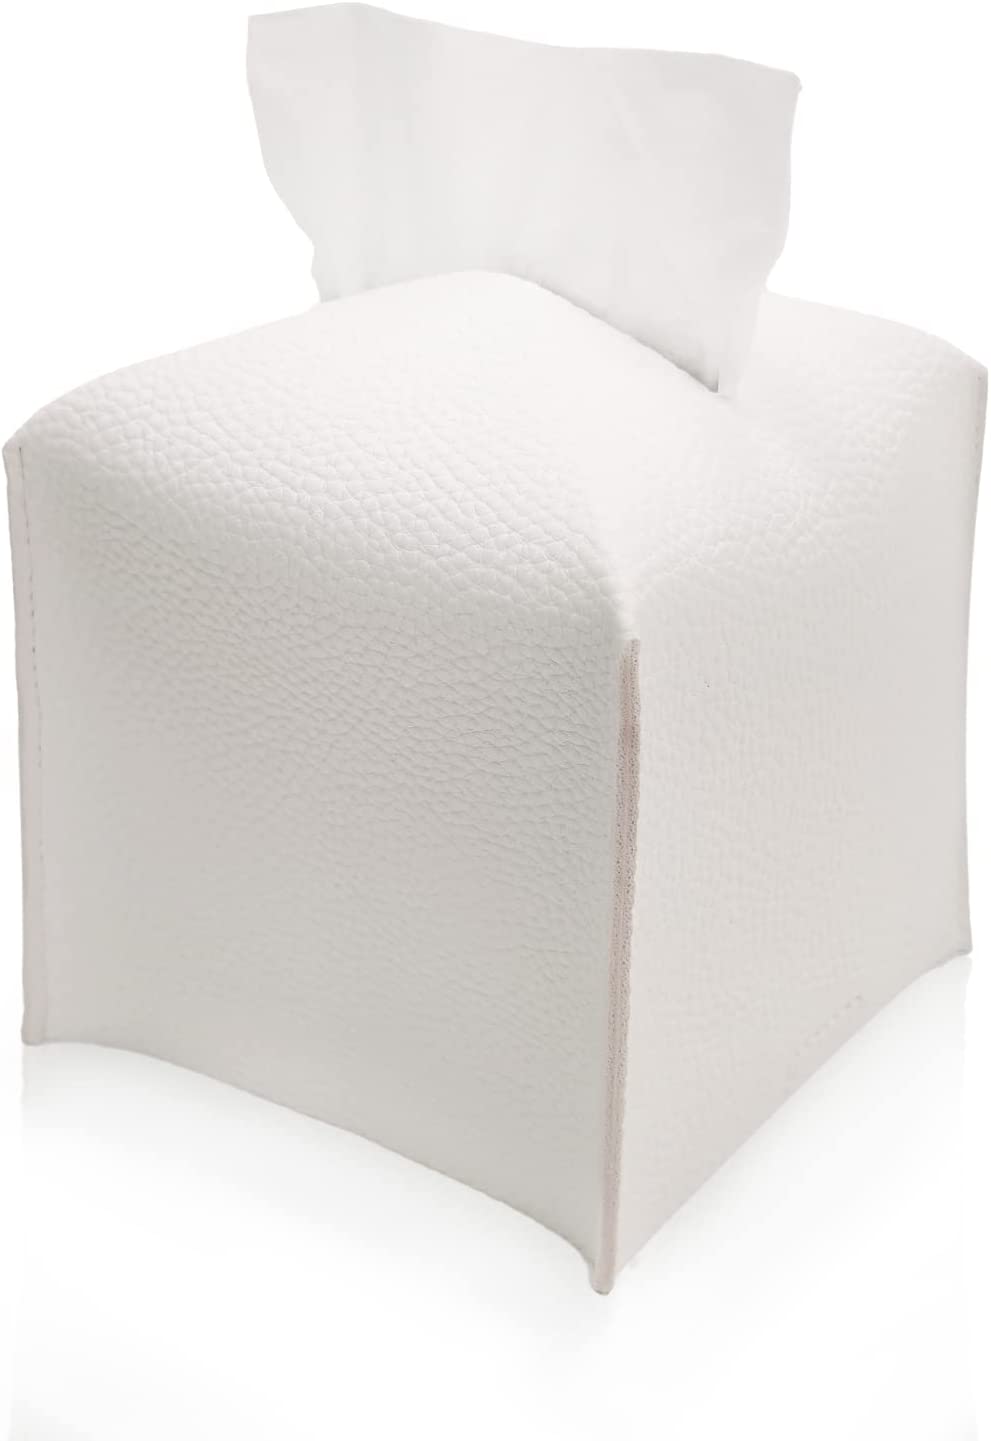 Tissue Box Cover,White